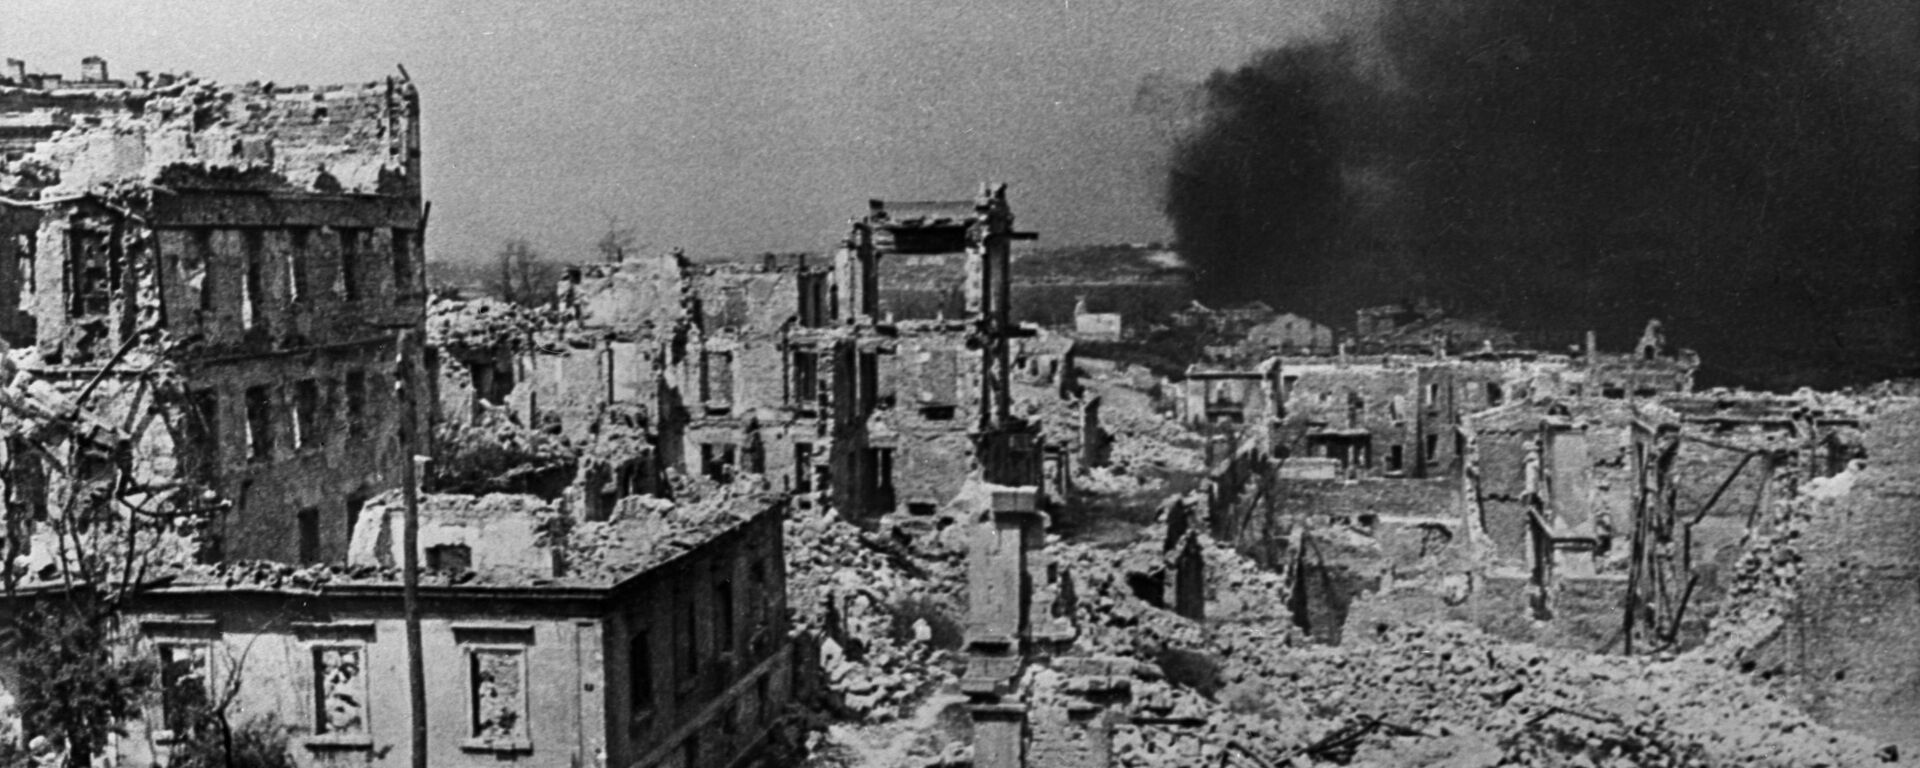 Thành phố Sevastopol sau vụ đánh bom, năm 1942. - Sputnik Việt Nam, 1920, 22.06.2021